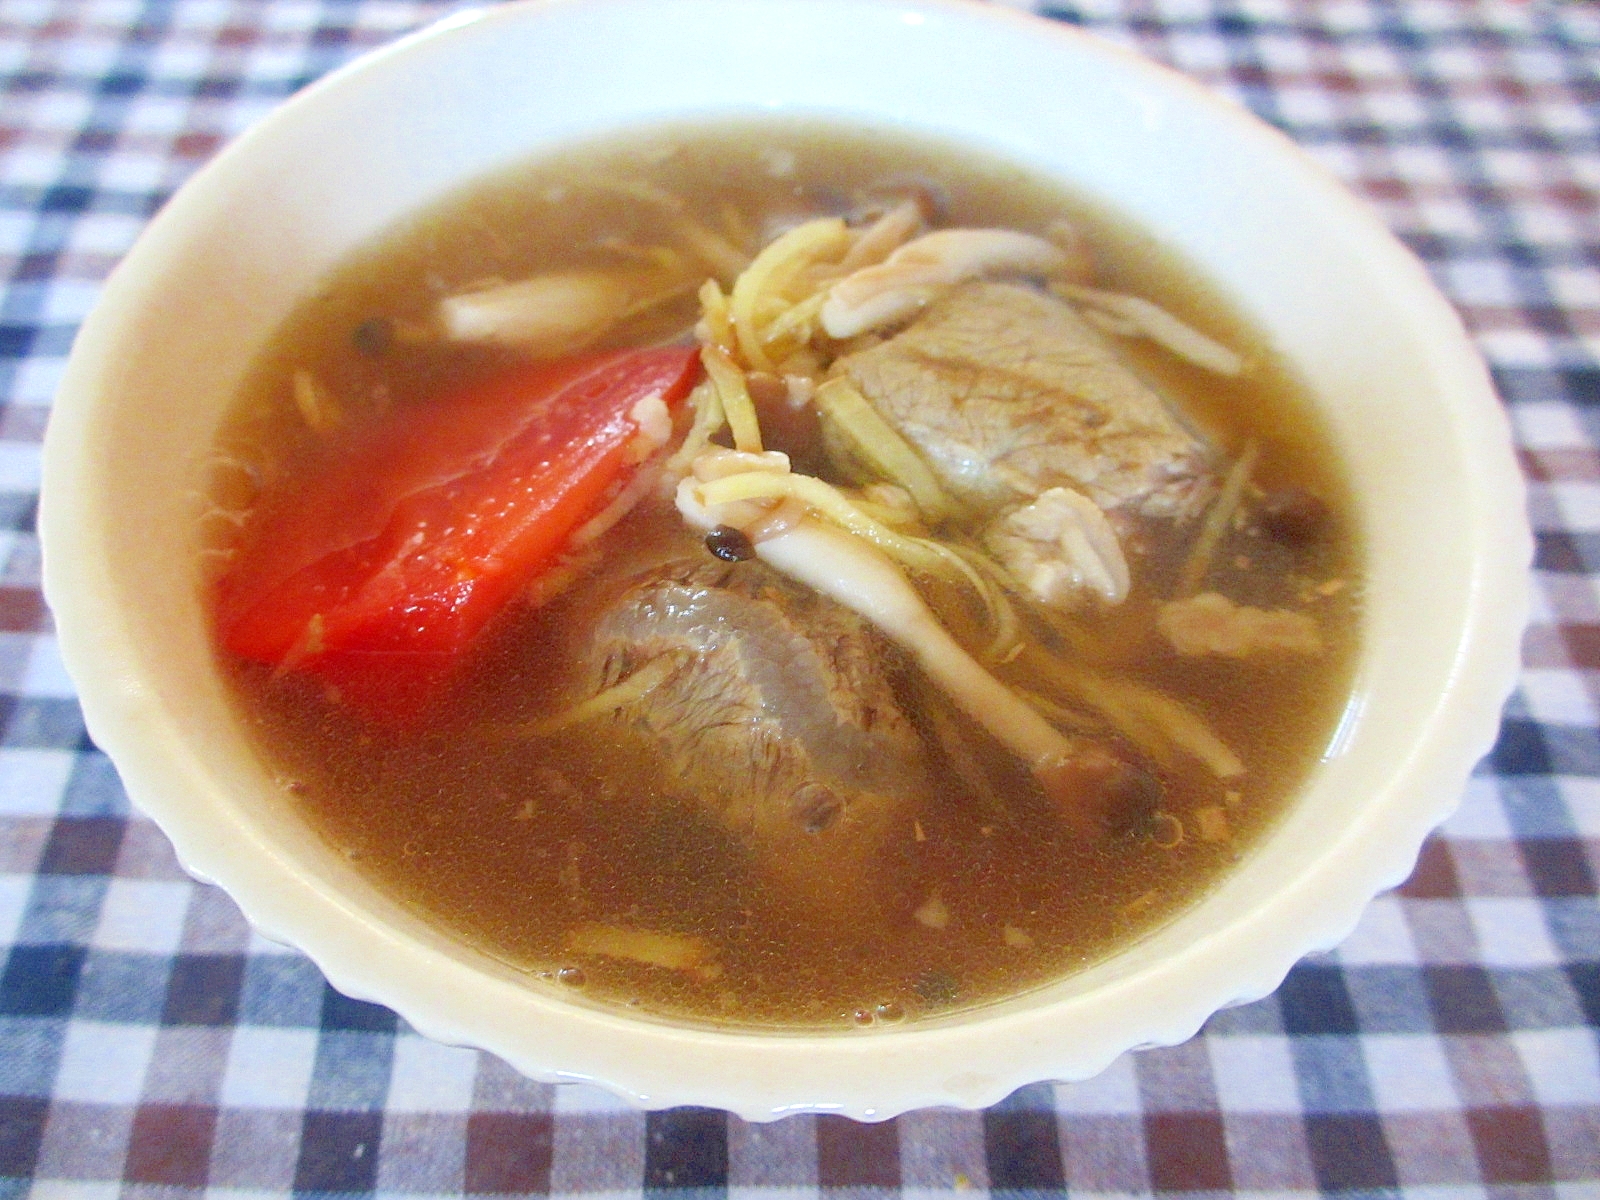 牛スネ肉としめじとトマトの生姜スープ